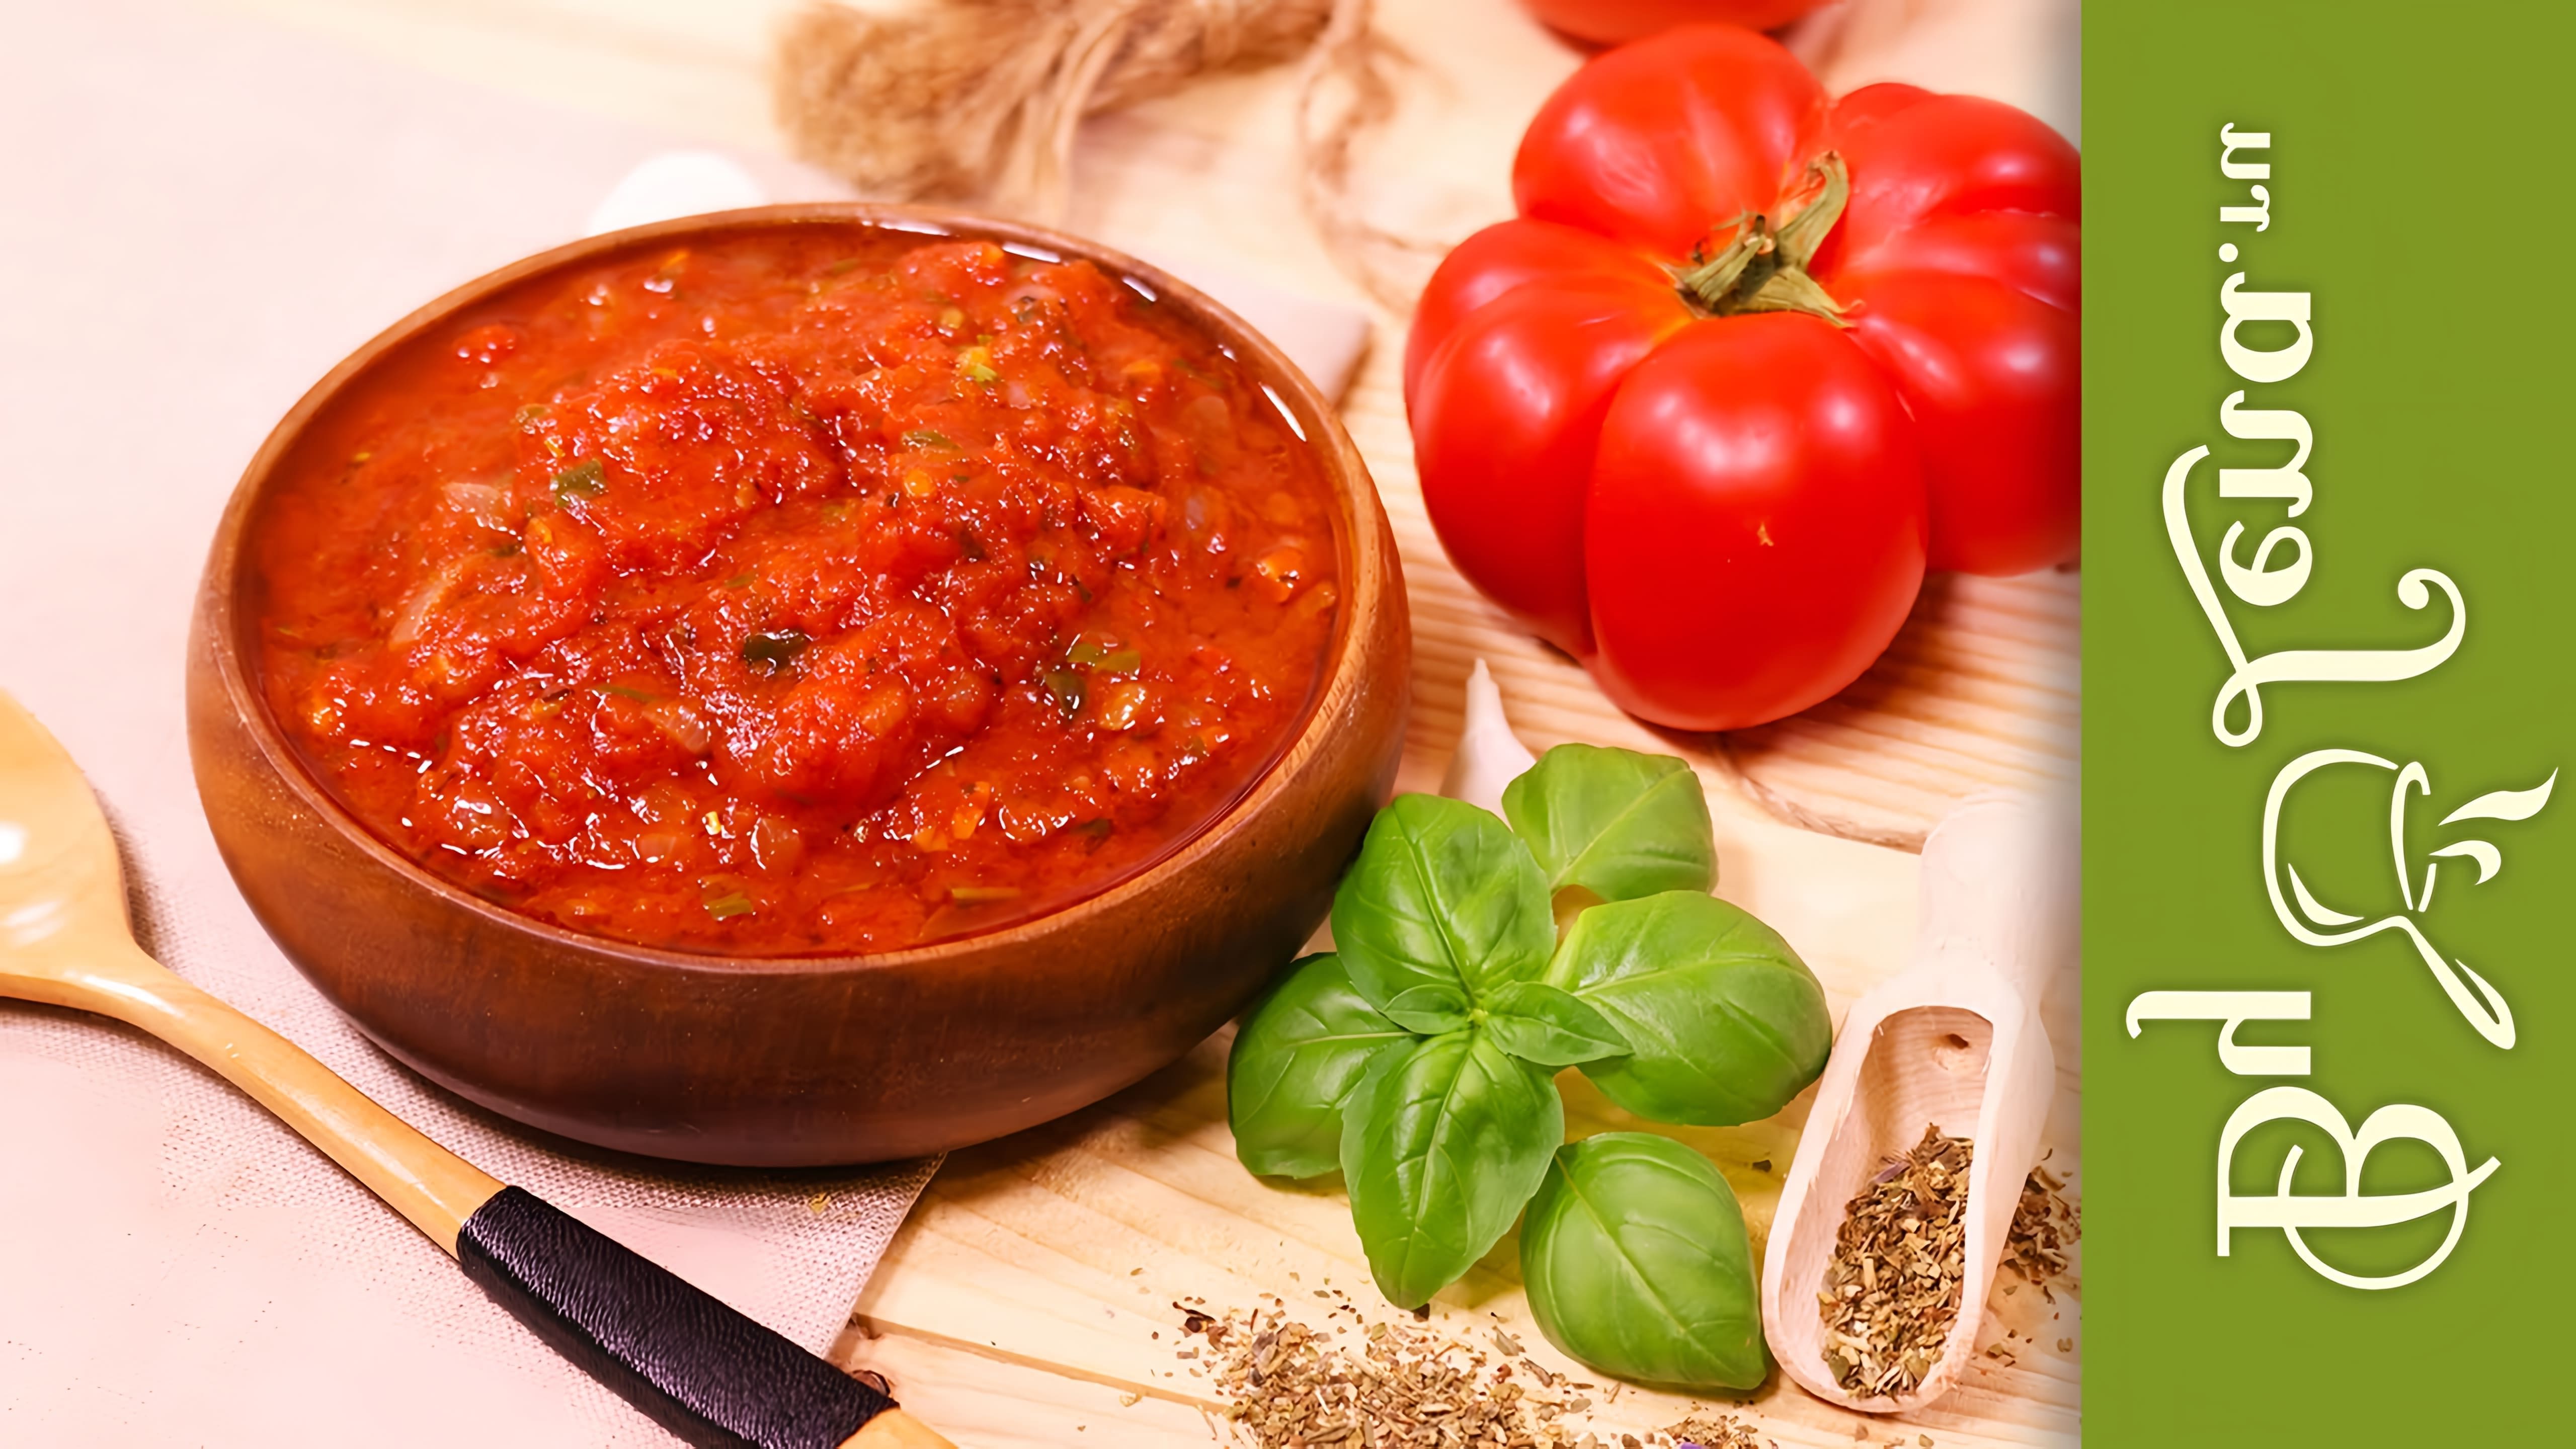 Итальянский соус из помидор (Маринара) - это классический итальянский соус, который используется для приготовления различных блюд, таких как паста, пицца и другие